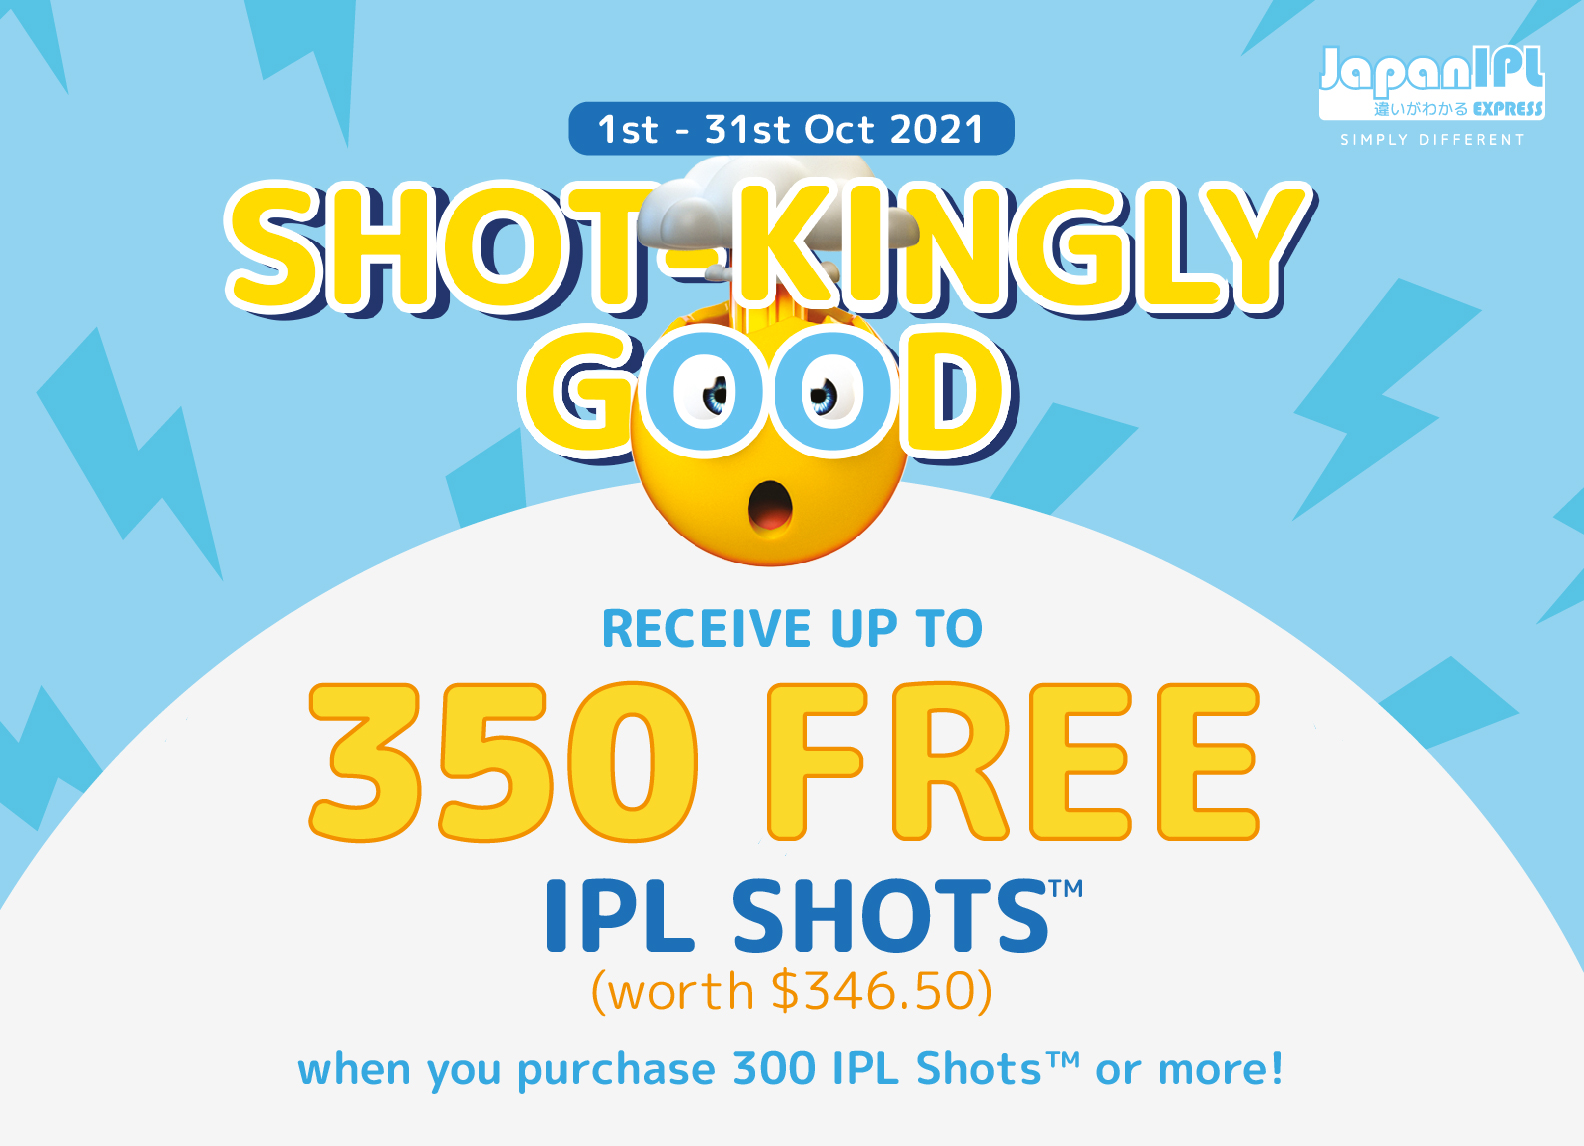 Receive up to 350 Free IPL shots at Japan IPL Express